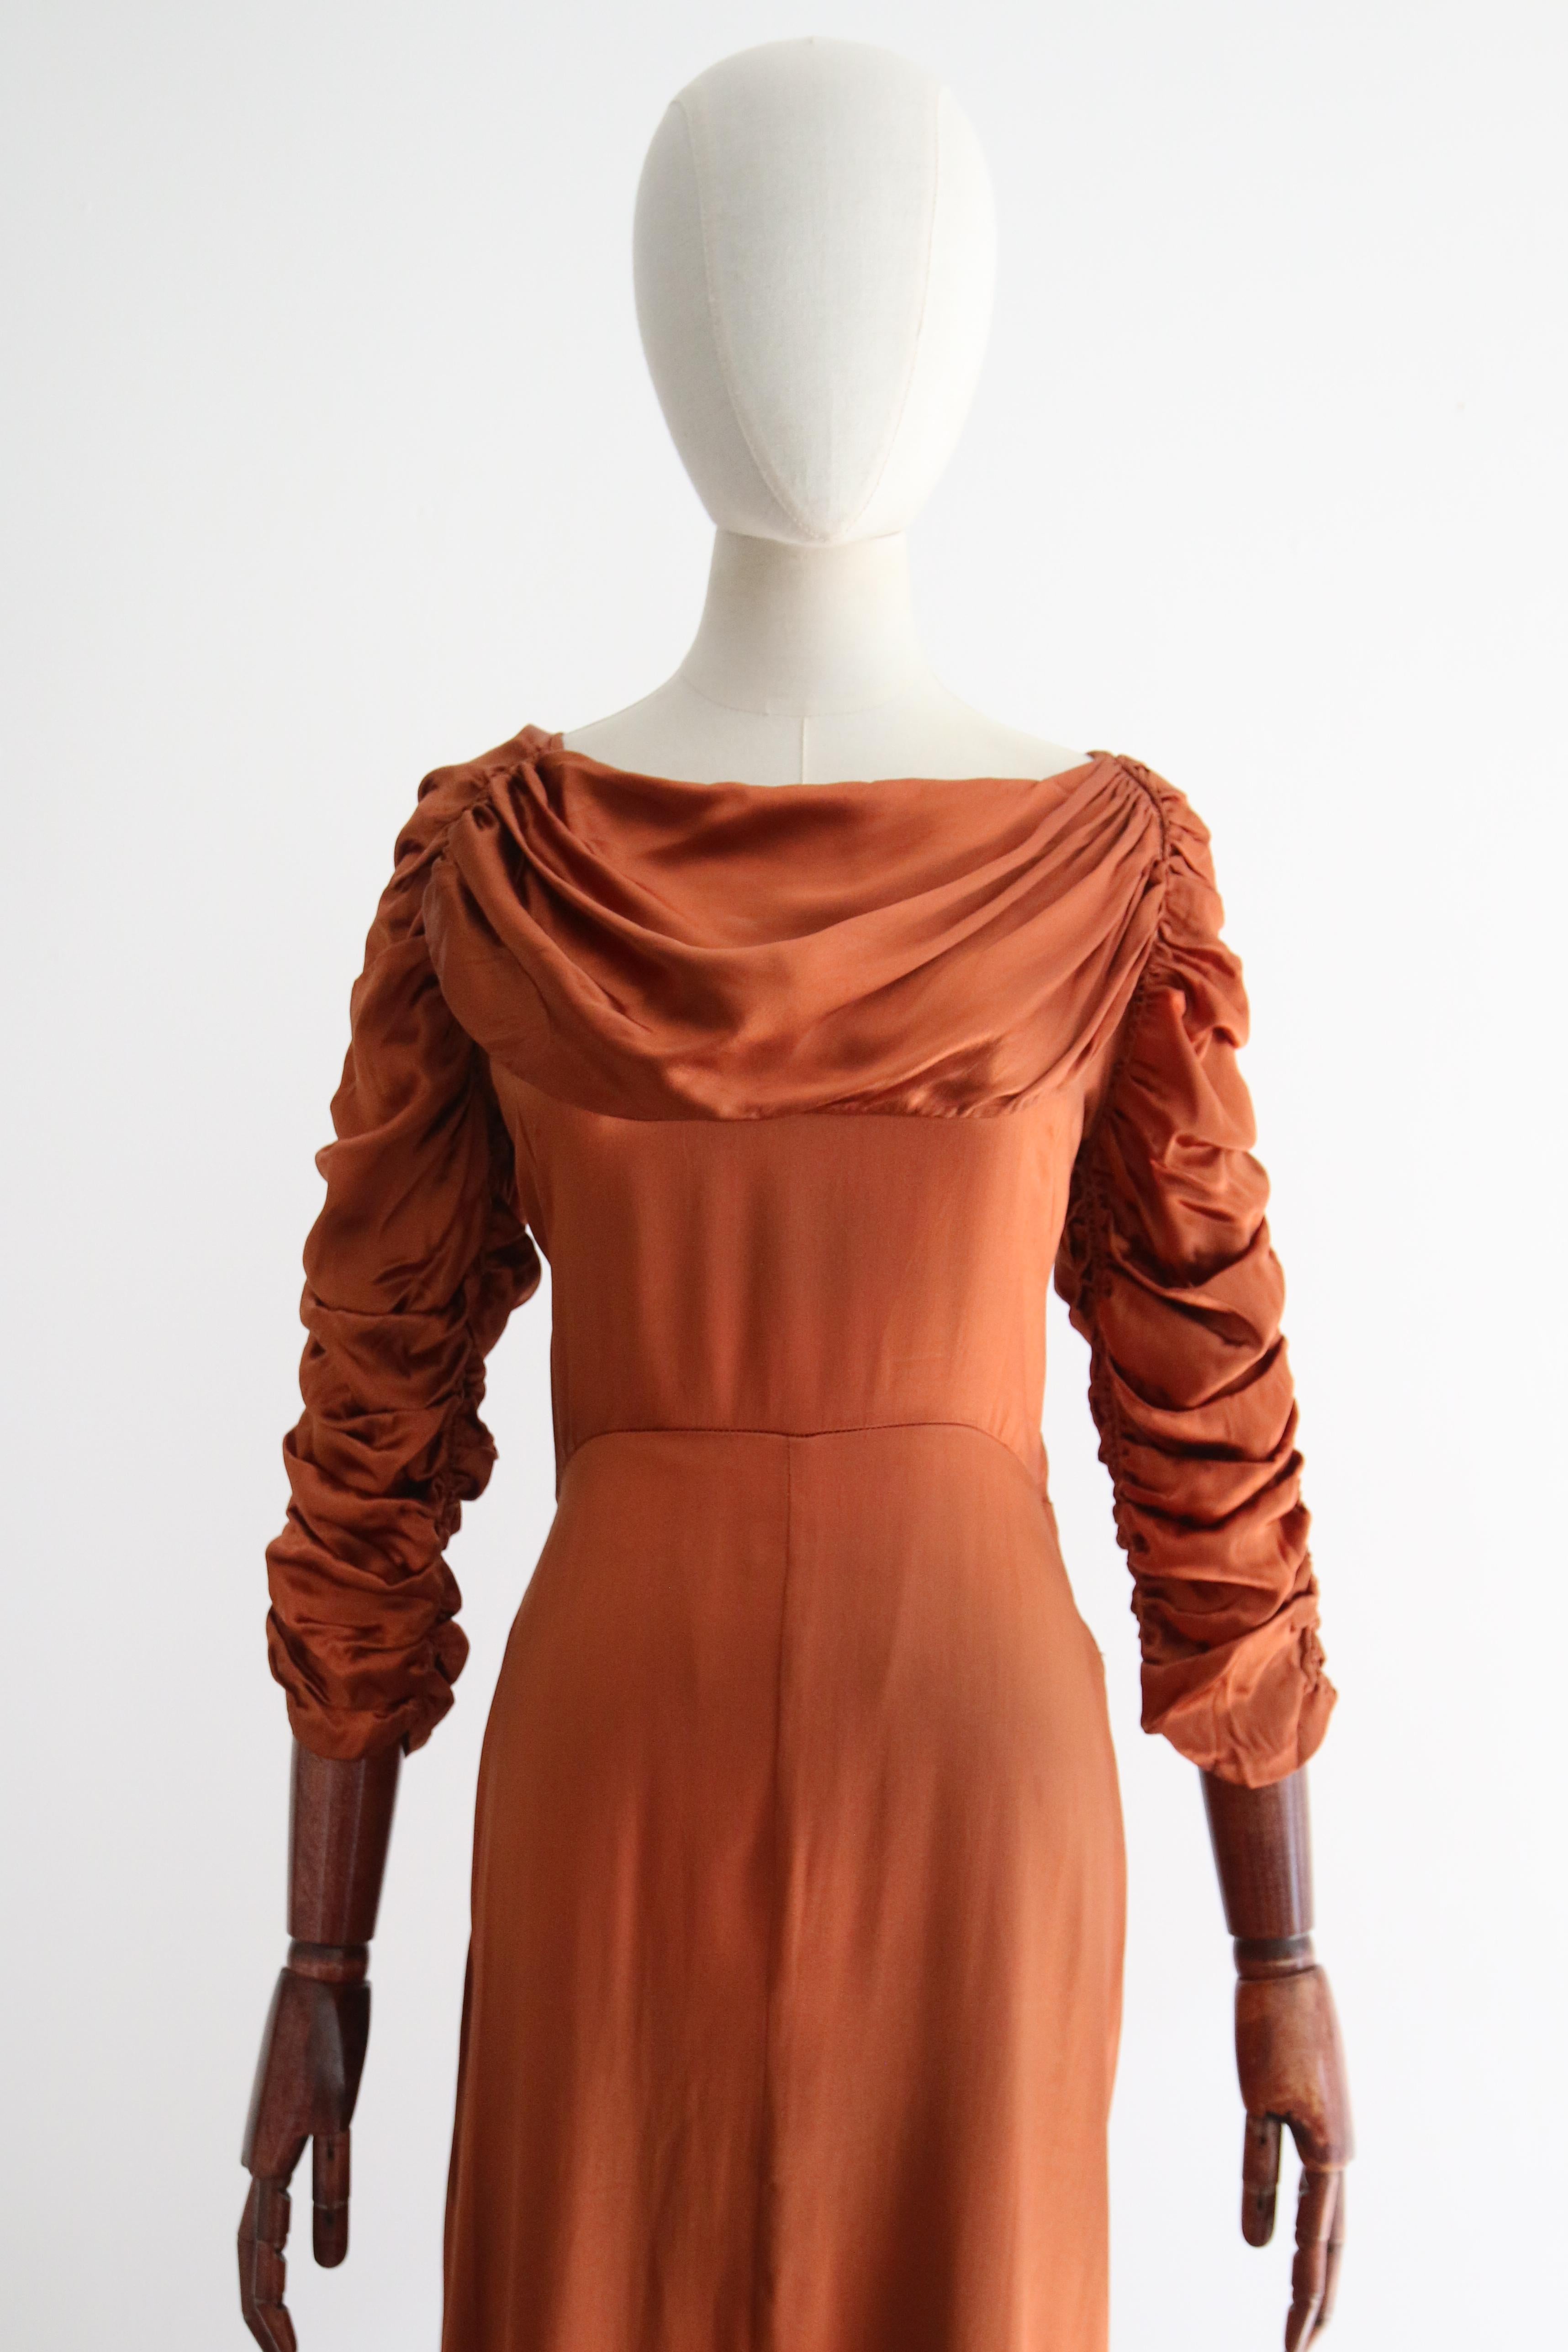 Cette robe de satin originale des années 1930, réalisée dans la plus somptueuse nuance de satin ambré, est une pièce de choix pour votre garde-robe d'occasions spéciales. 

L'encolure arrondie est encadrée par un panneau en forme de vache, qui se